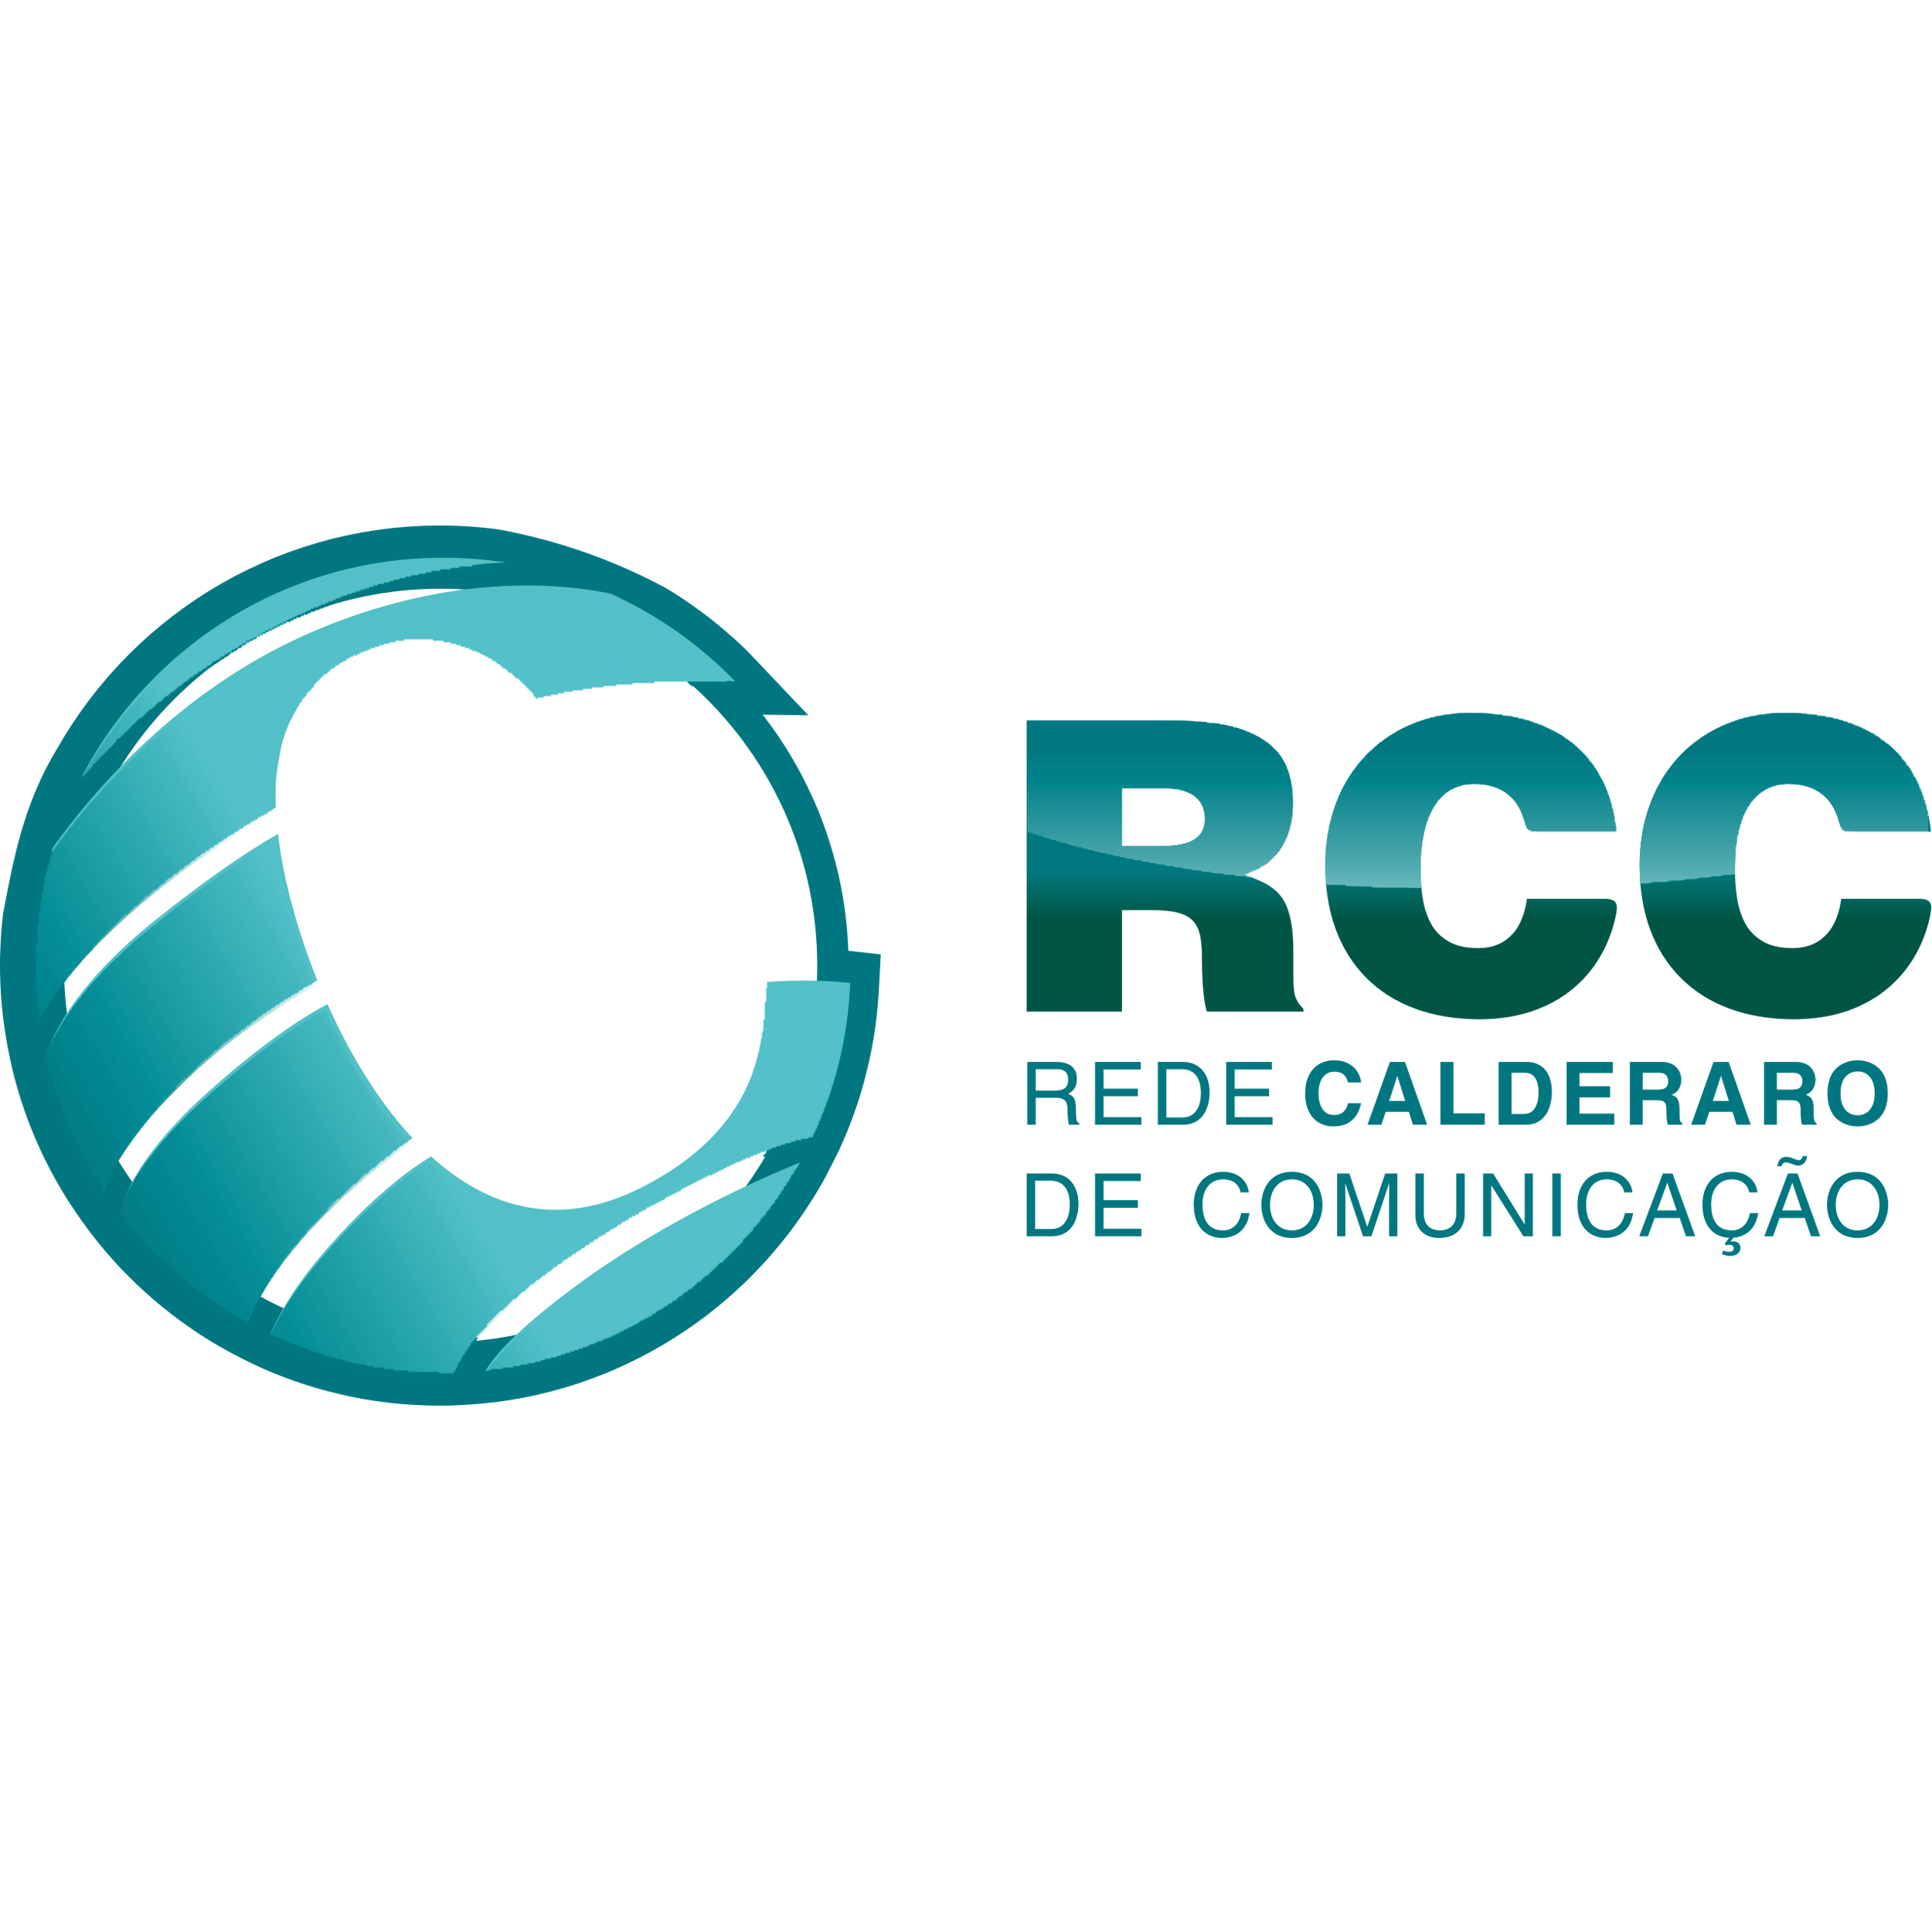 Rede Calderaro De Comunicacao Logo Transparent Picture